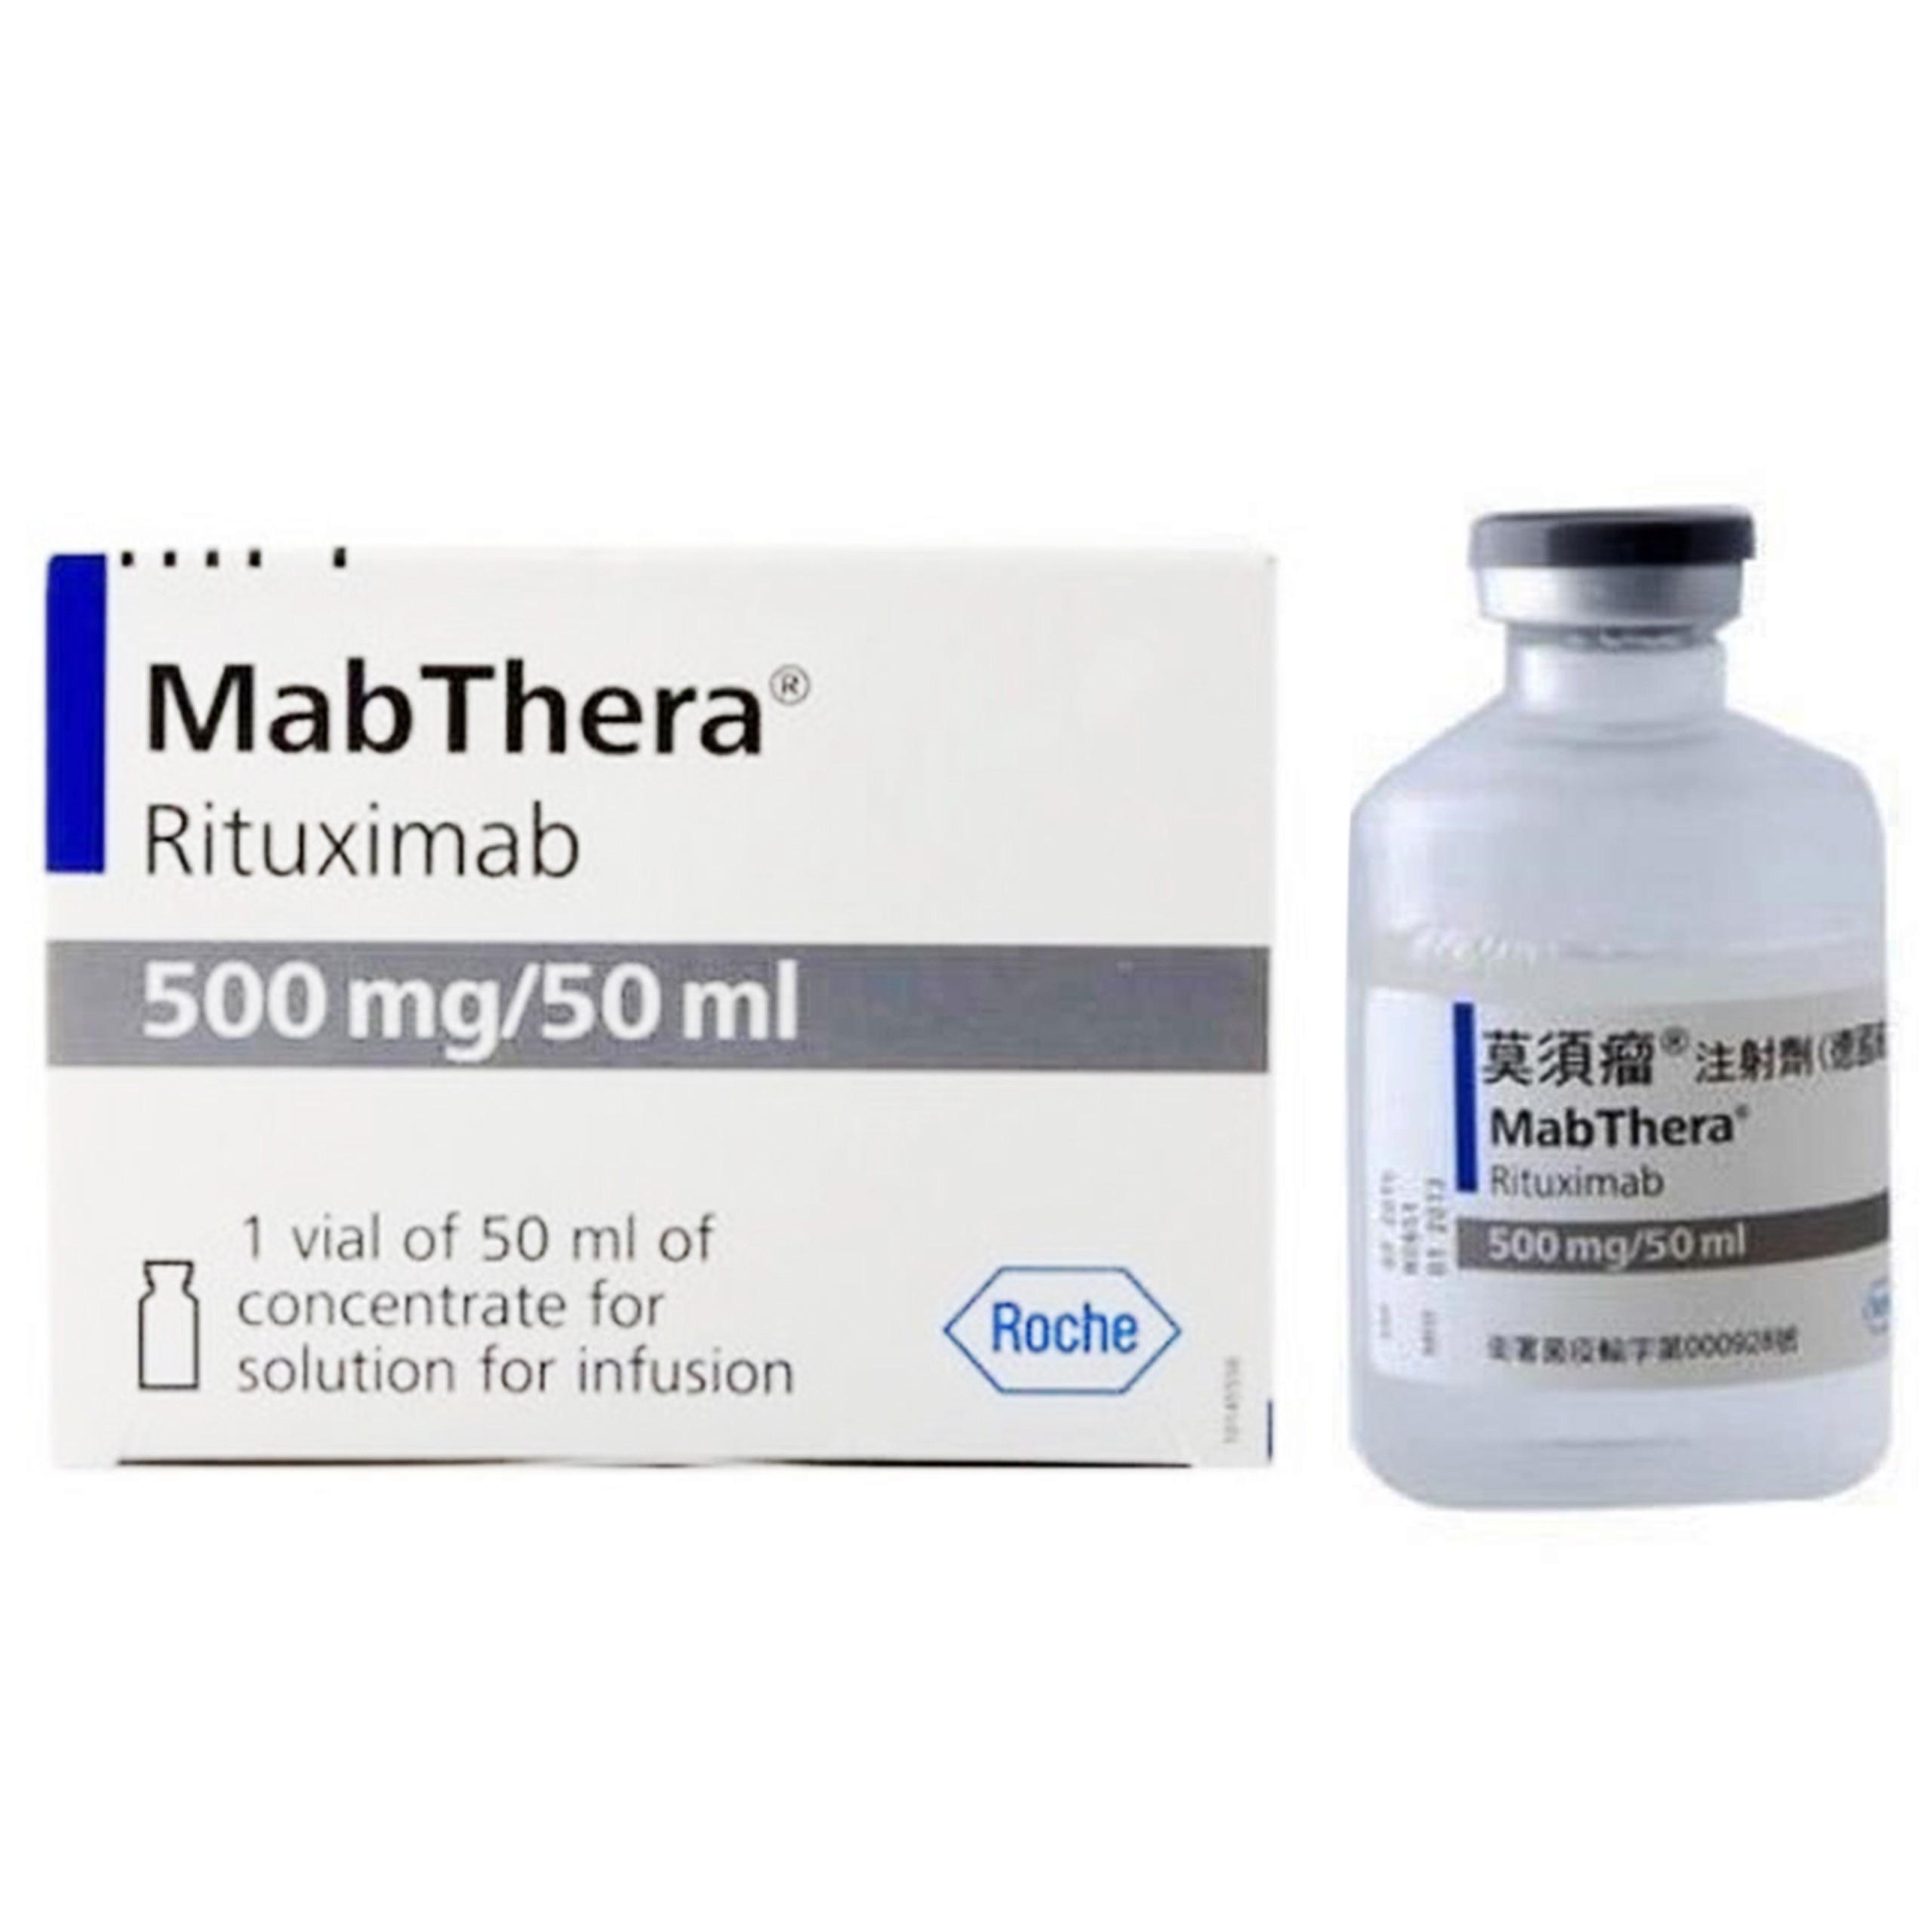 Thuốc Mabthera 500mg Roche dùng trong điều trị ung thư (50ml)